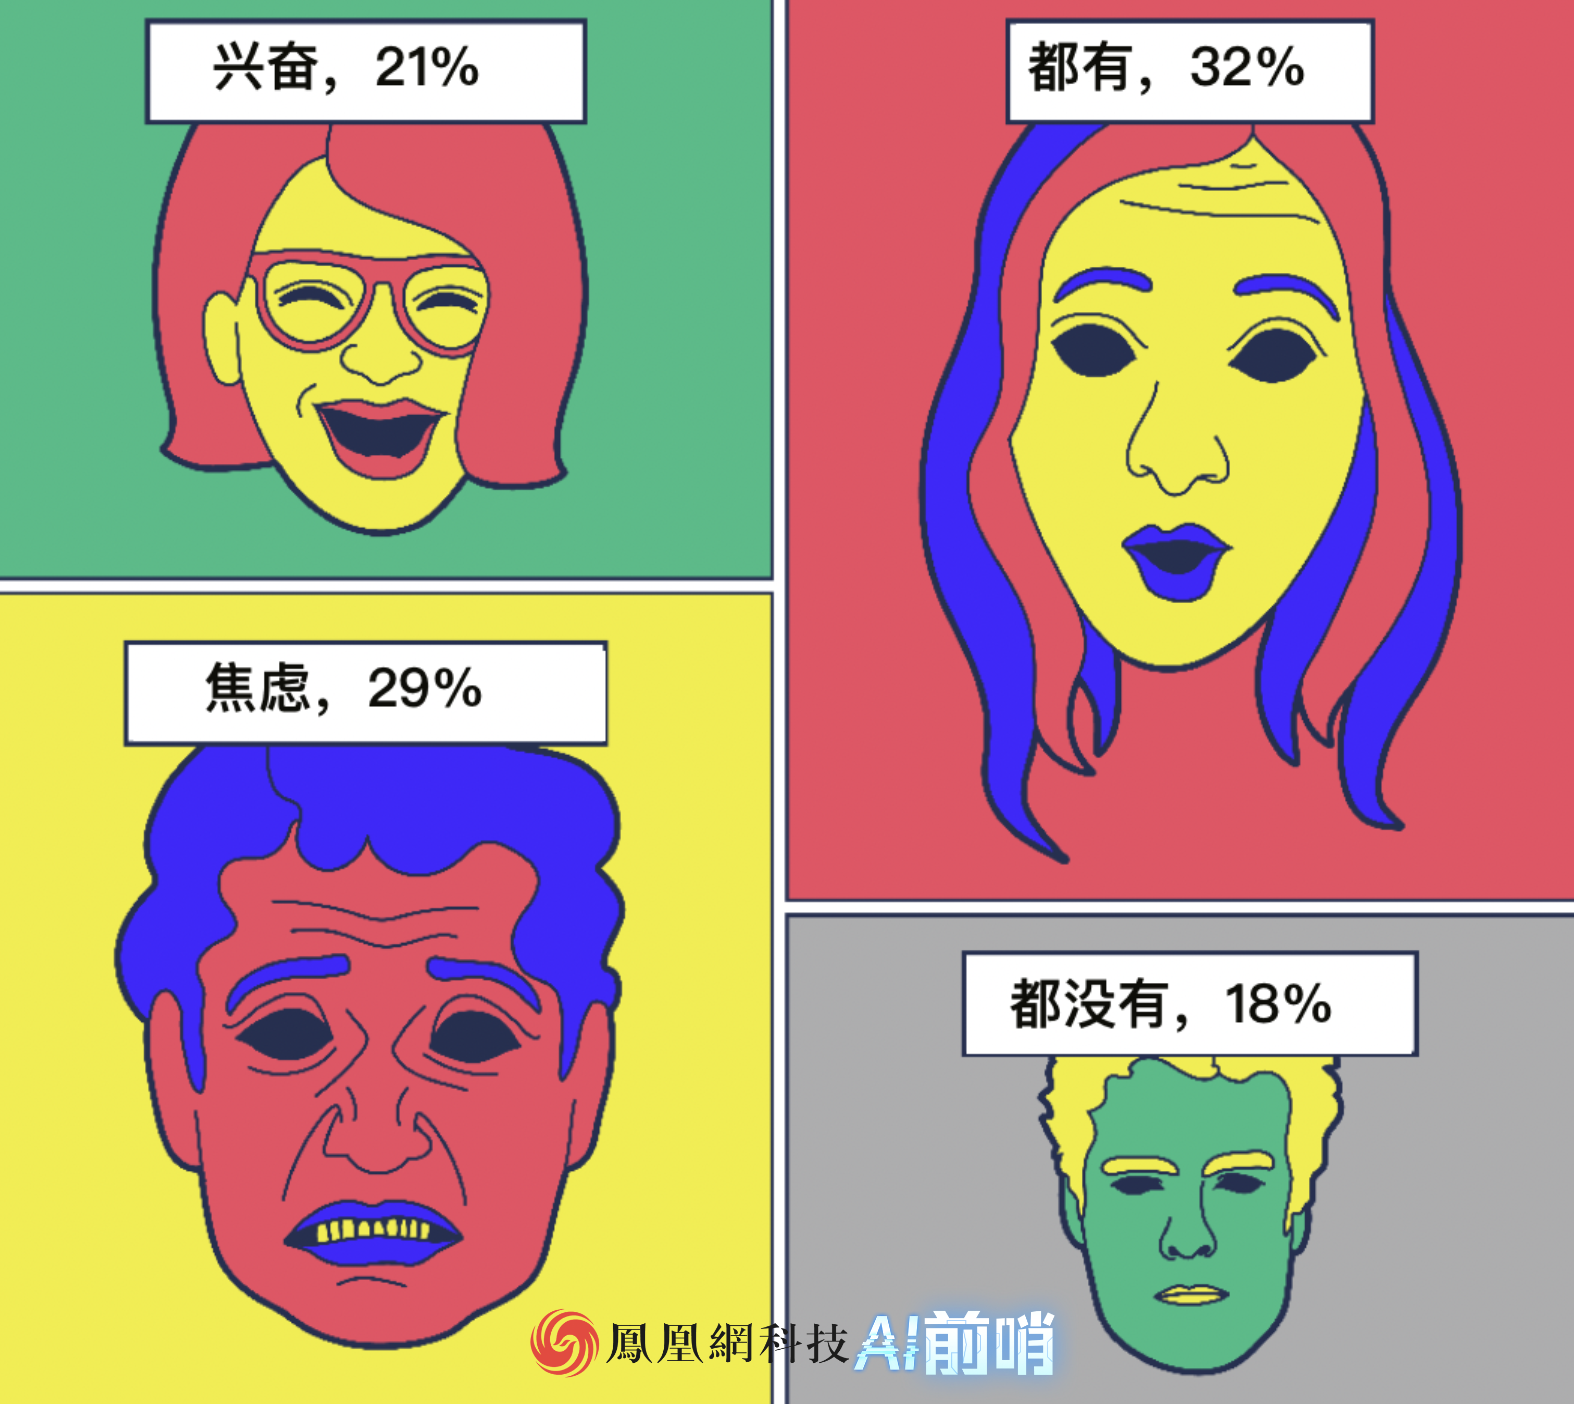 32%的人对AI既兴奋也焦虑